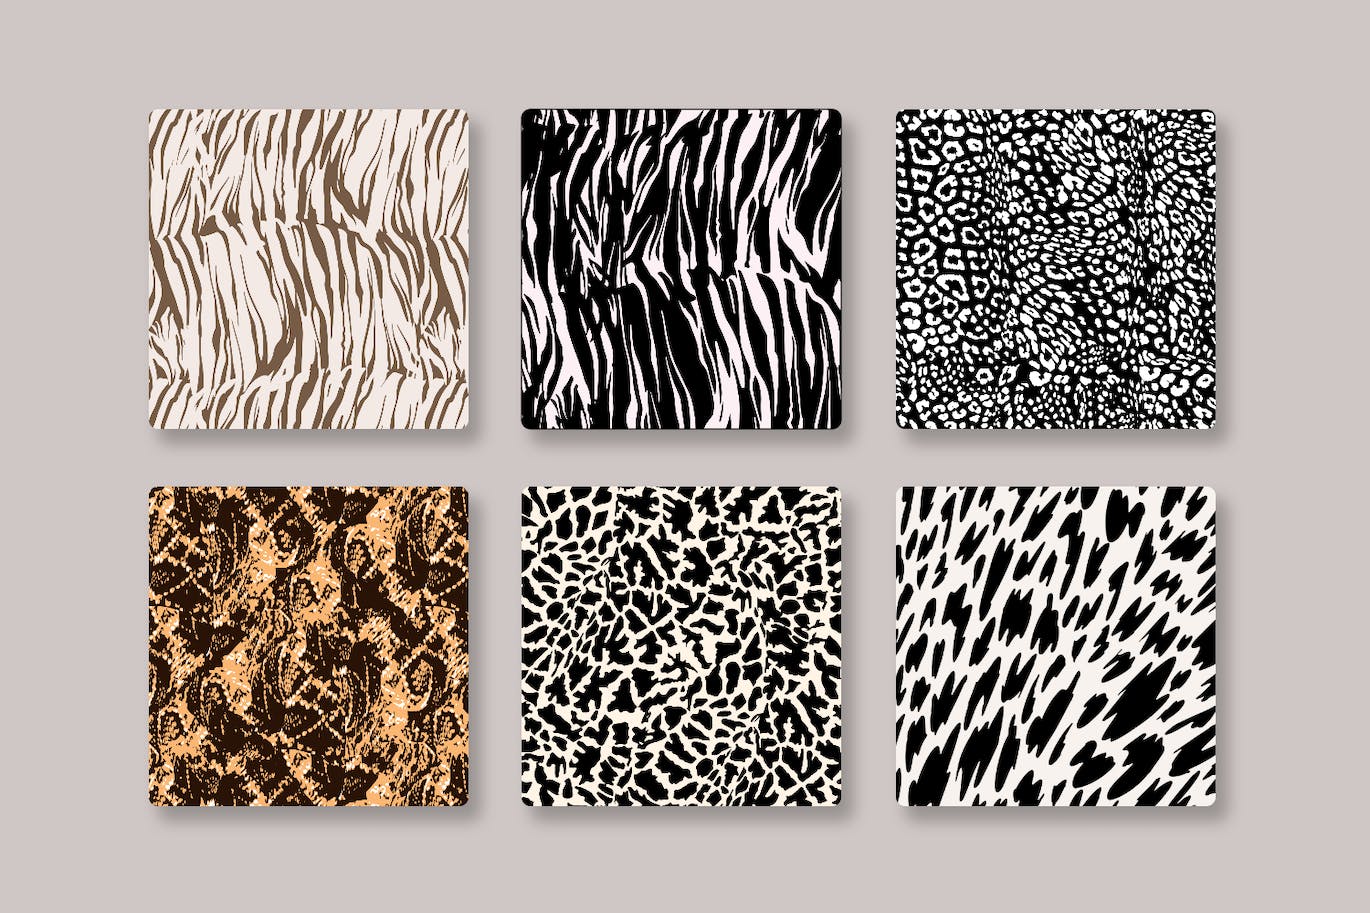 6种动物皮肤豹纹纹矢量图案6-animal-prints-vector-patterns-酷社 (KUSHEW)